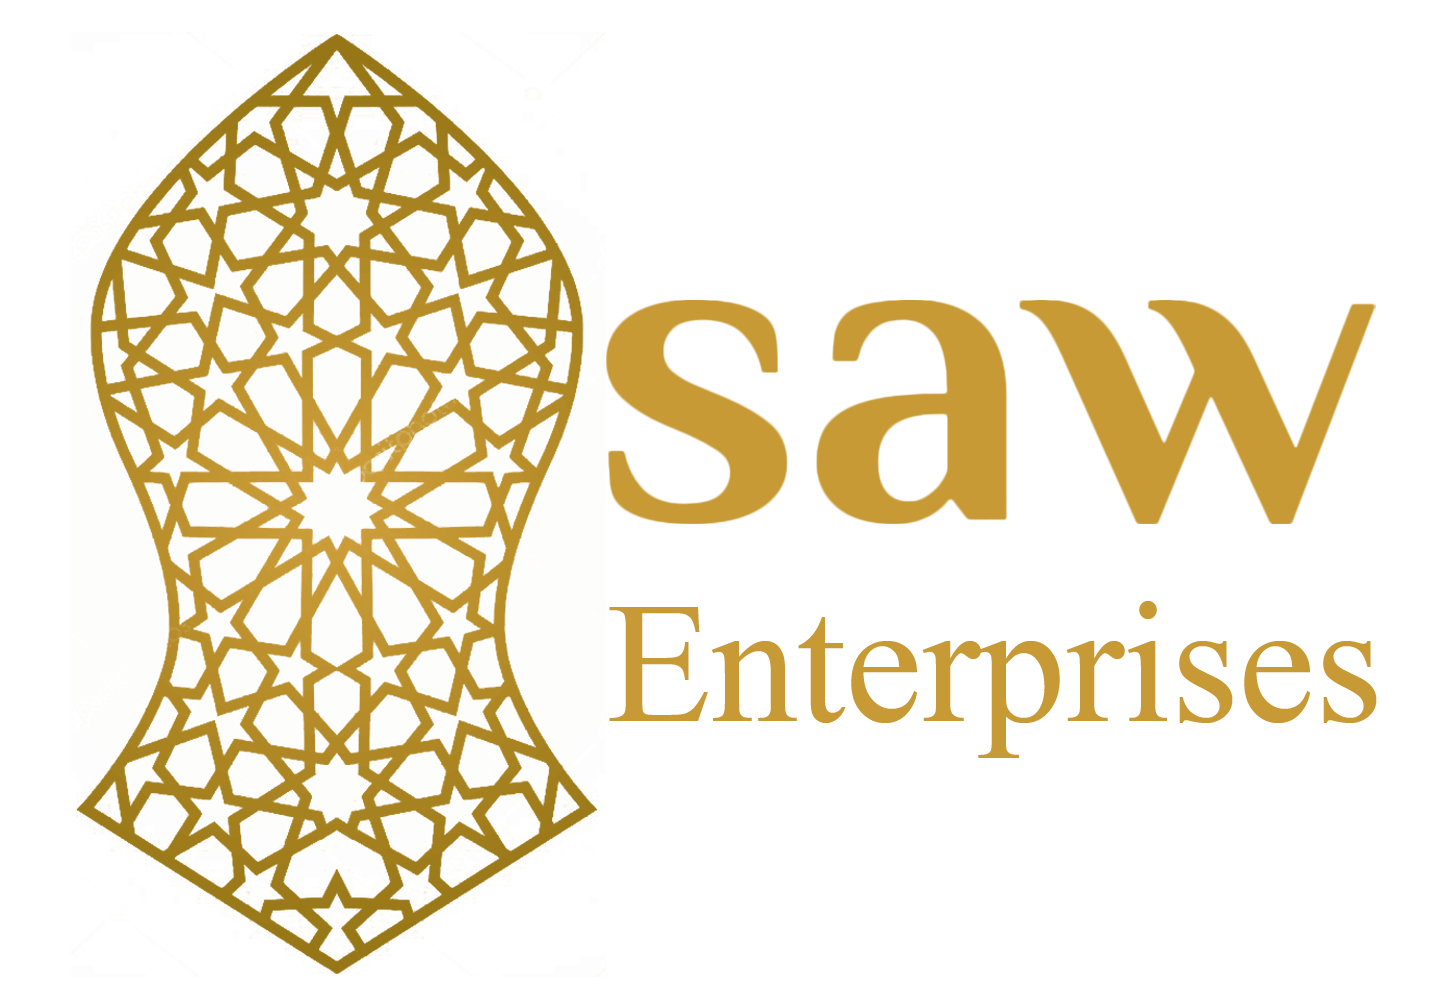 Saw Enterprise